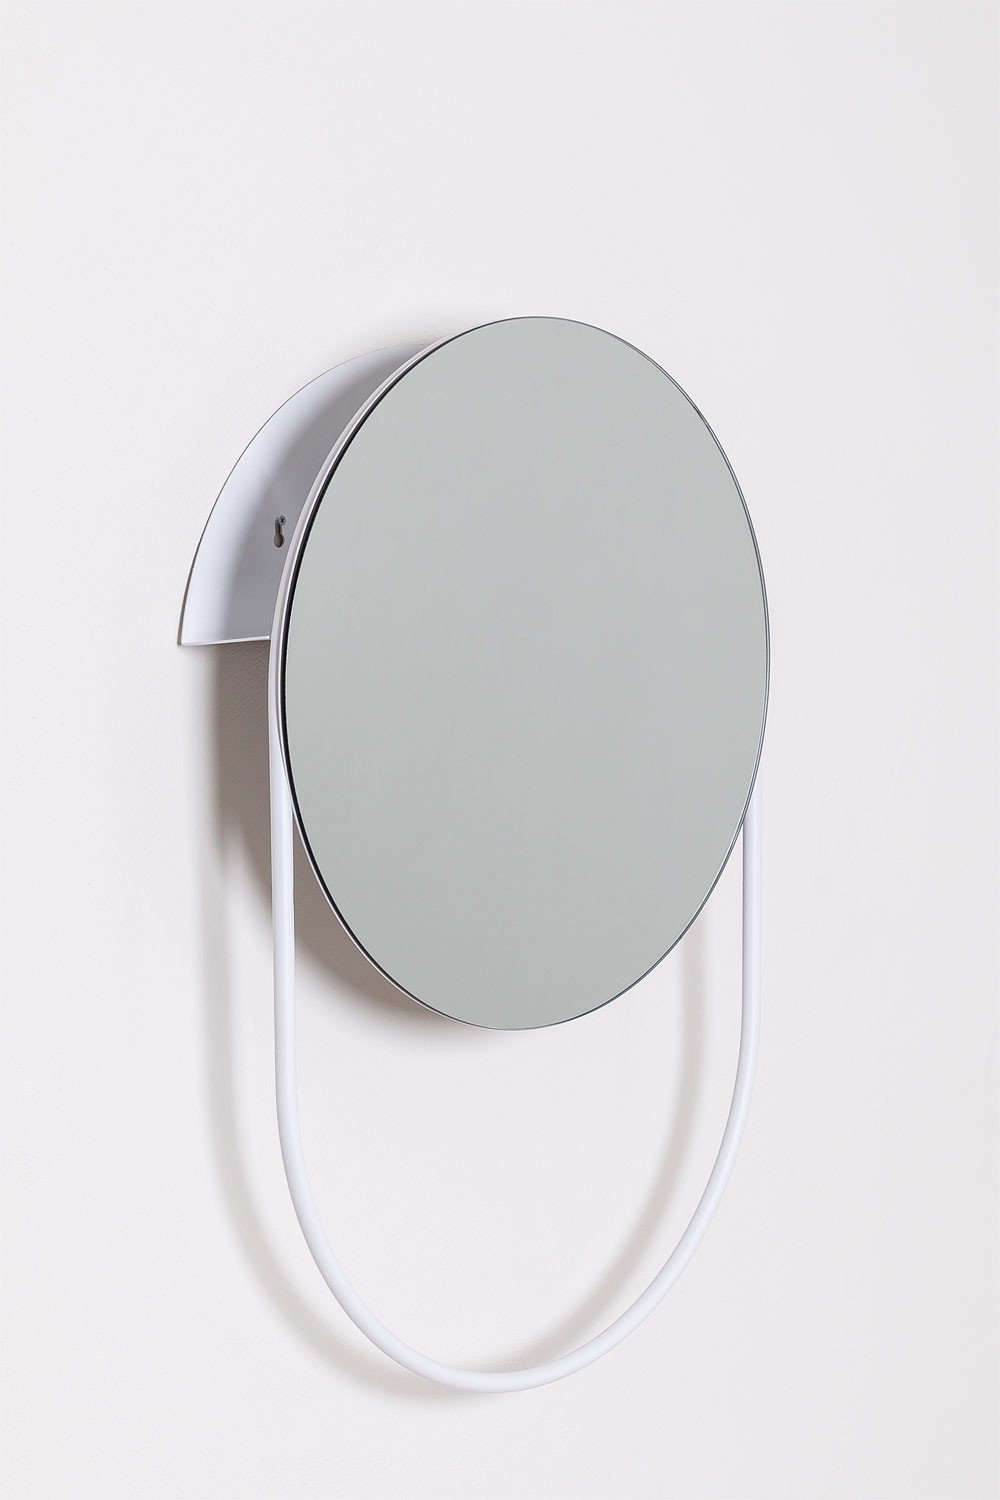 Specchio portasciugamani da parete rotondo in acciaio (Ø50cm) Vor, immagine della galleria 1